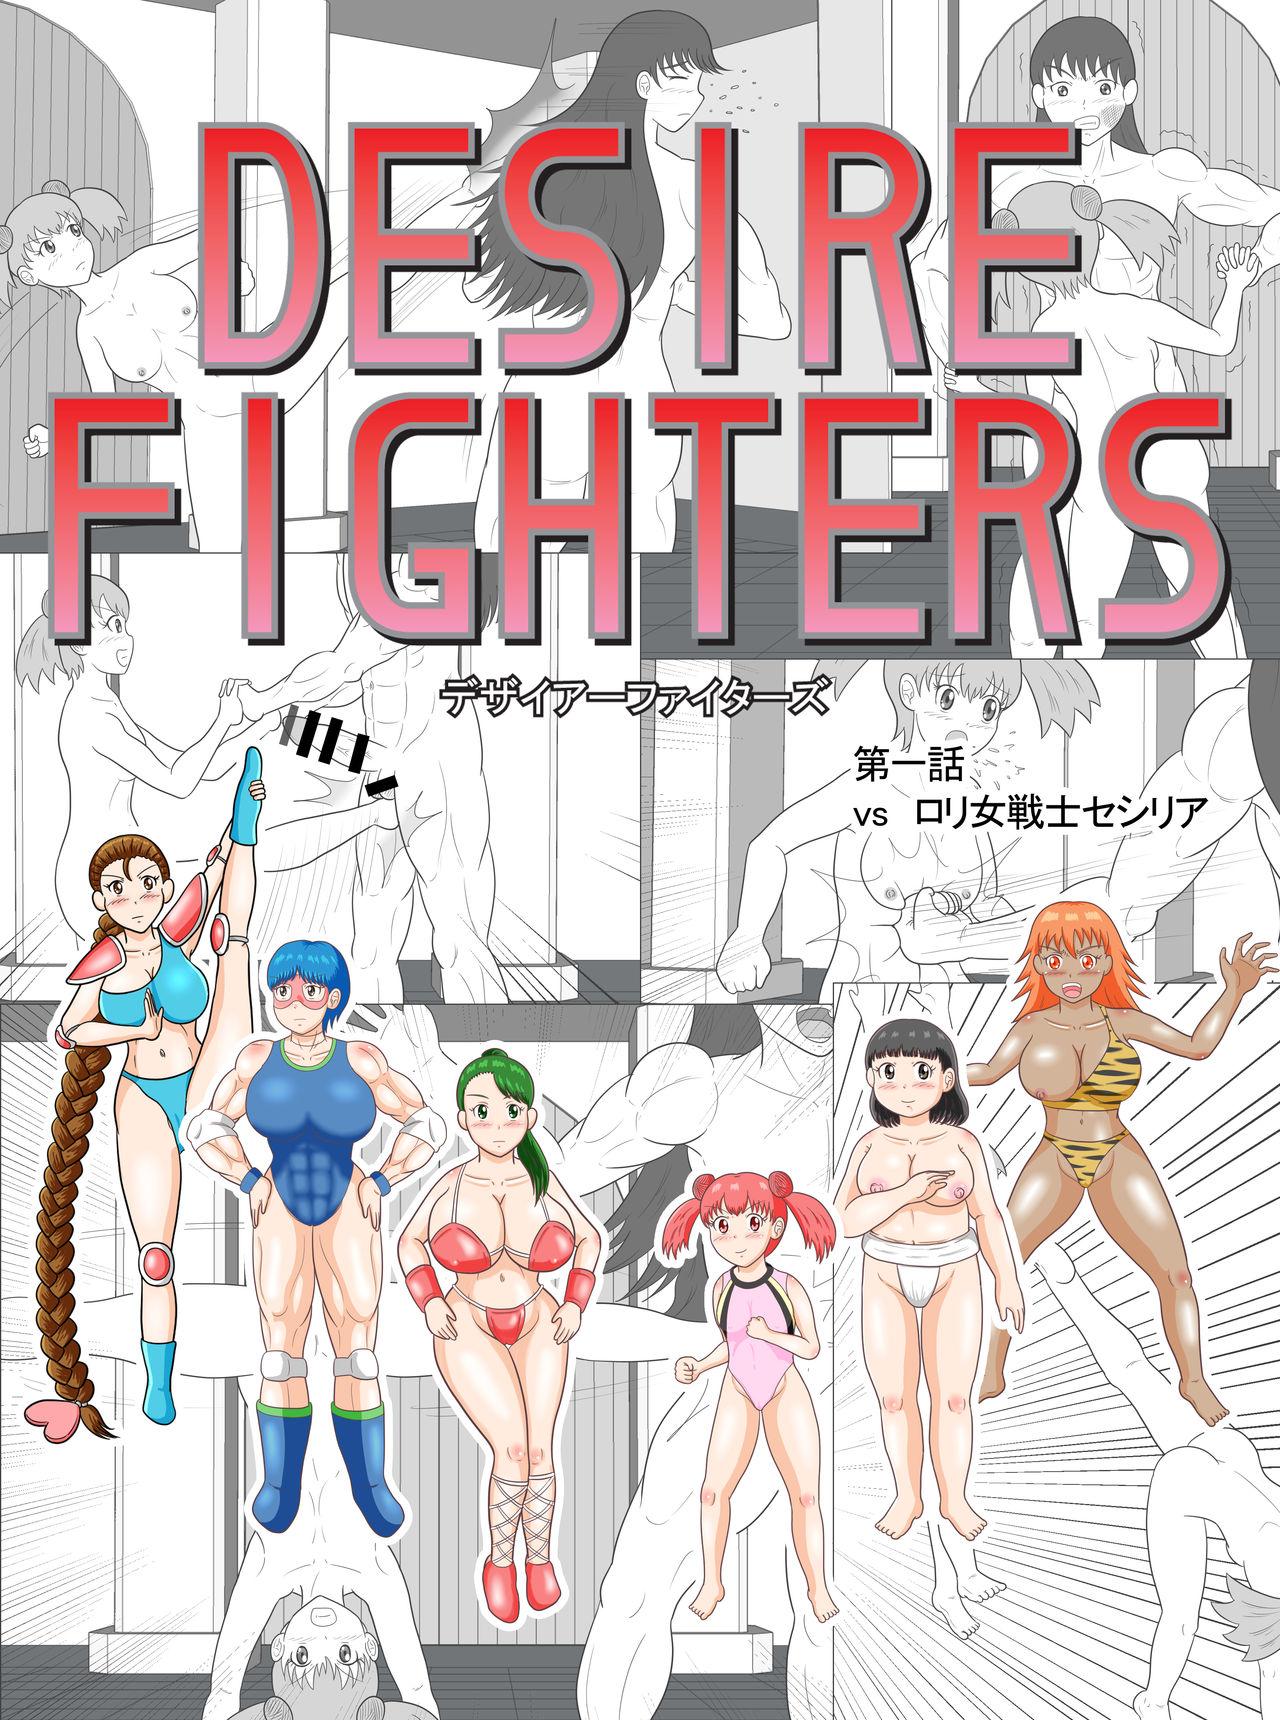 Desire Fighters Ch. 1 "vs Loli Onna Senshi Cecilia" 0